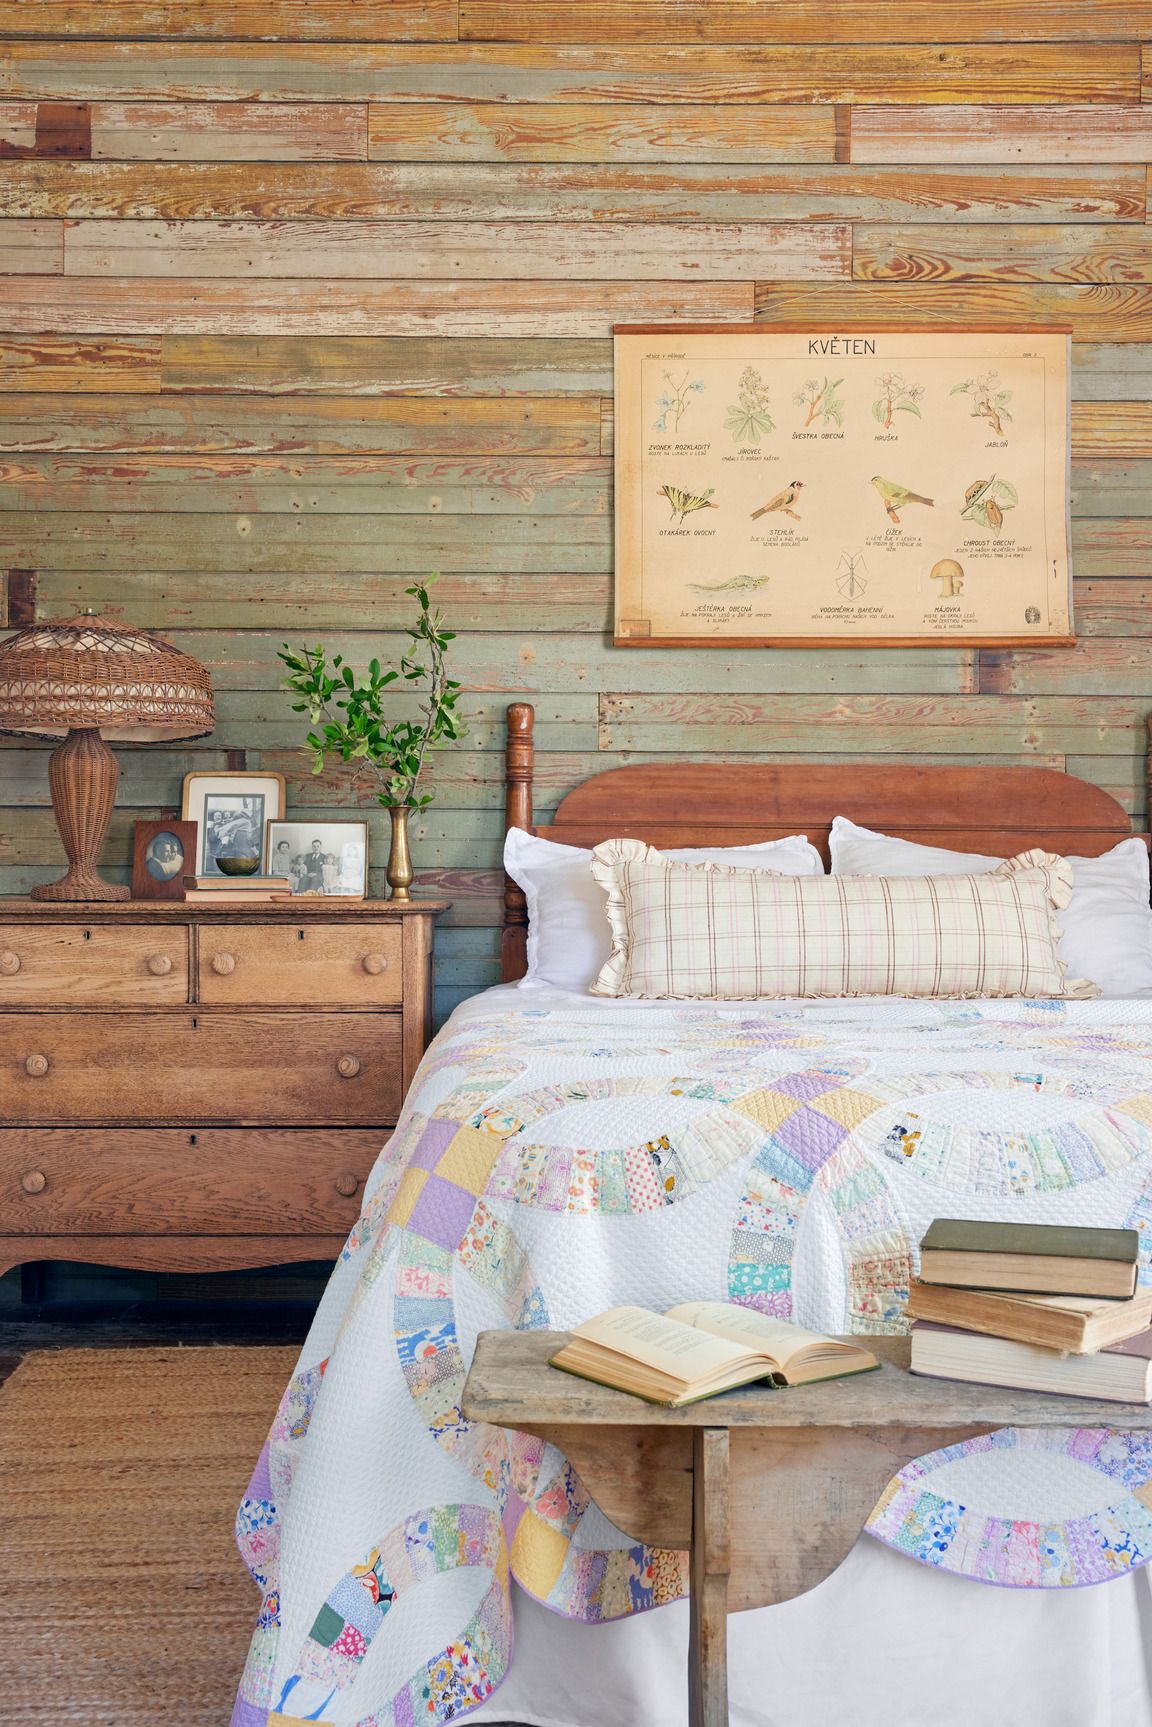 20 Cozy Farmhouse Bedroom Ideas - Rustic Farmhouse Bedrooms